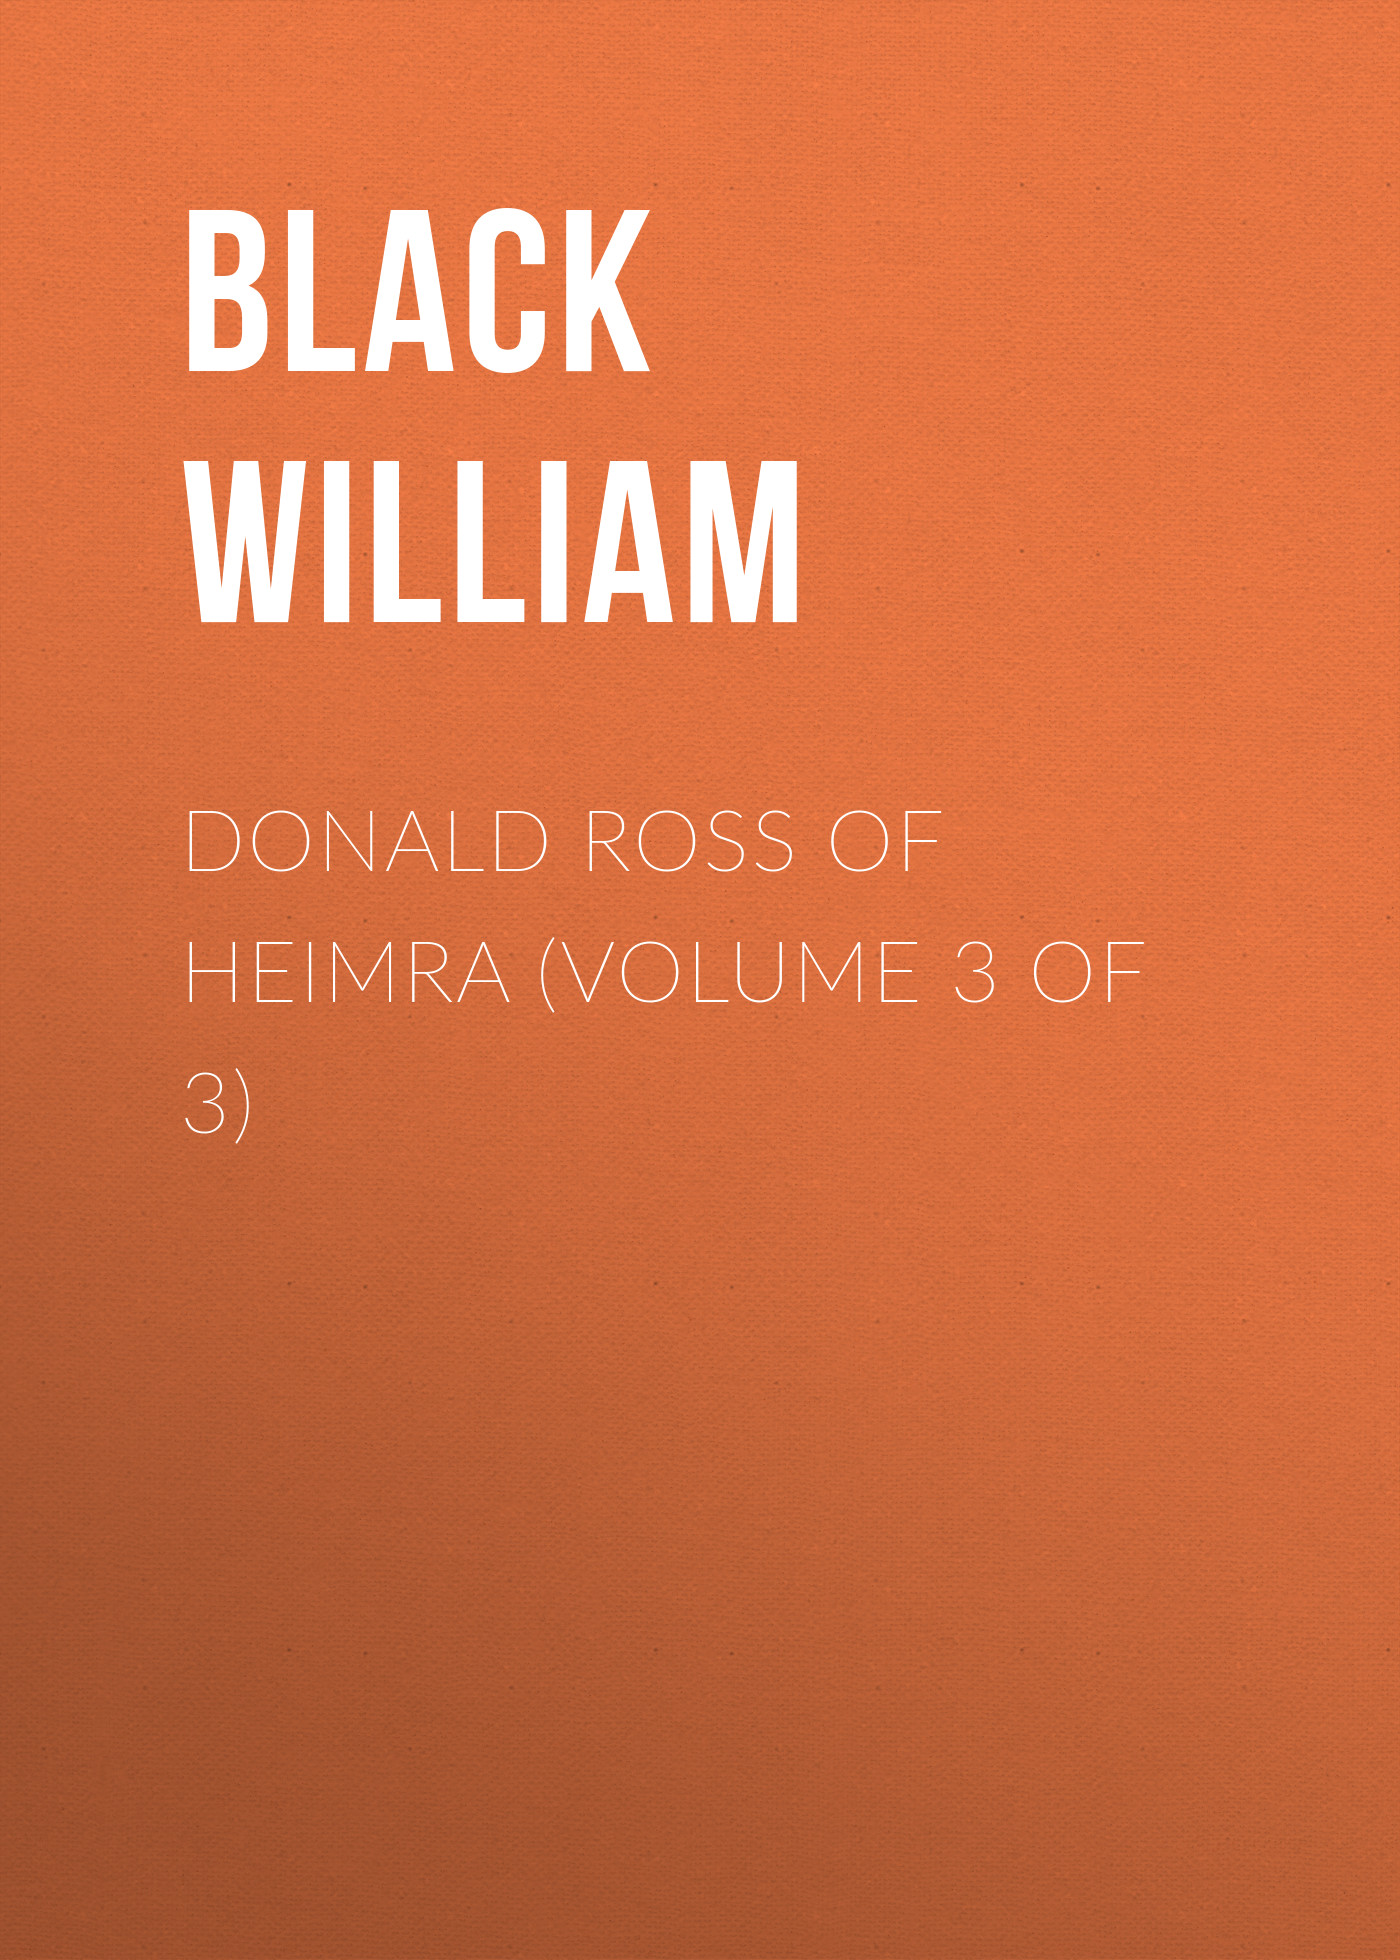 Книга Donald Ross of Heimra (Volume 3 of 3) из серии , созданная William Black, может относится к жанру Зарубежная старинная литература, Зарубежная классика. Стоимость электронной книги Donald Ross of Heimra (Volume 3 of 3) с идентификатором 24168884 составляет 0.90 руб.